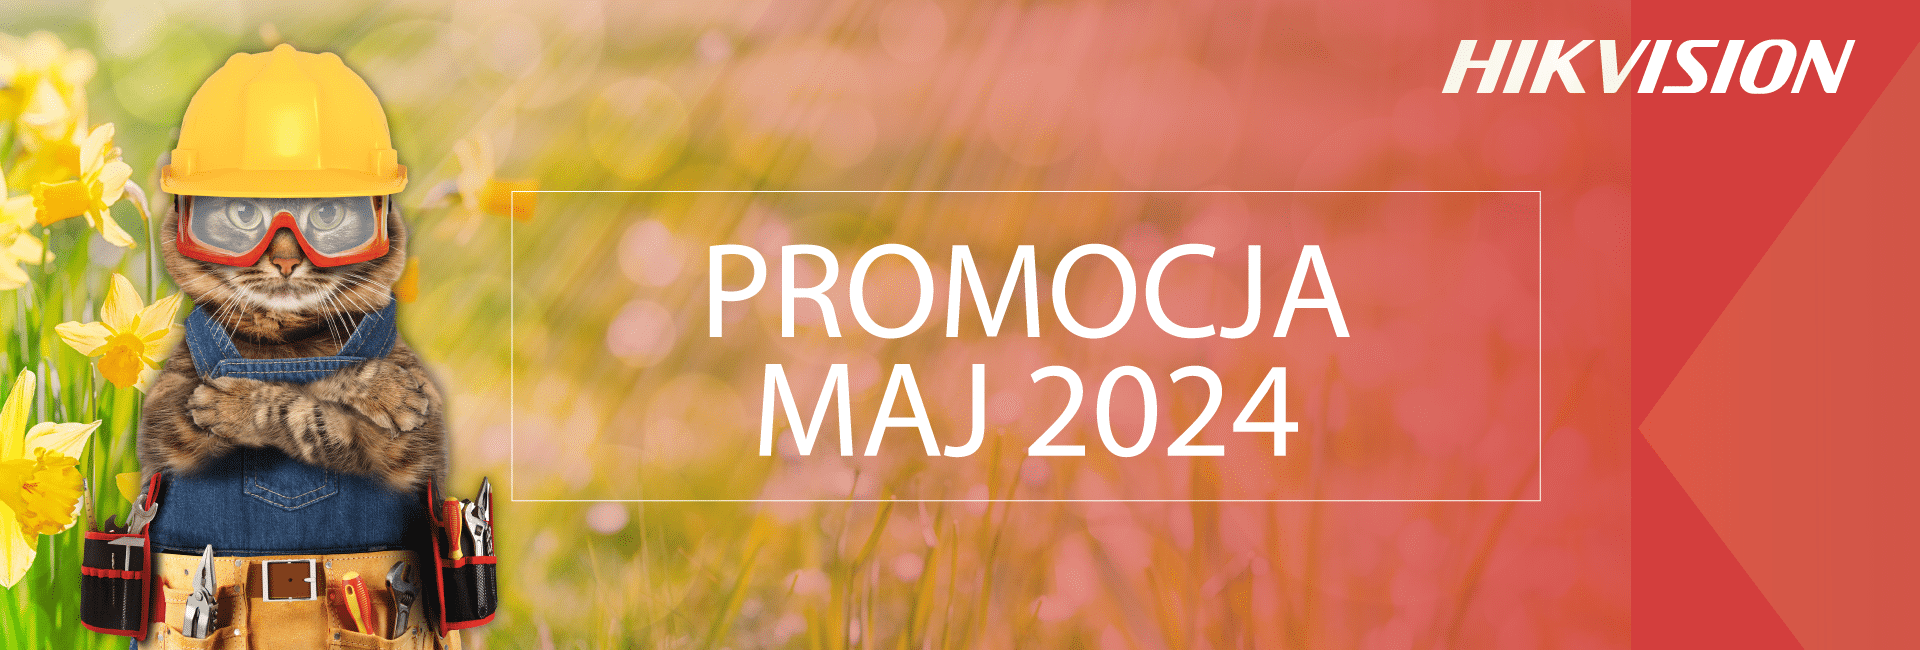 promocja-hikvision-majj-2024